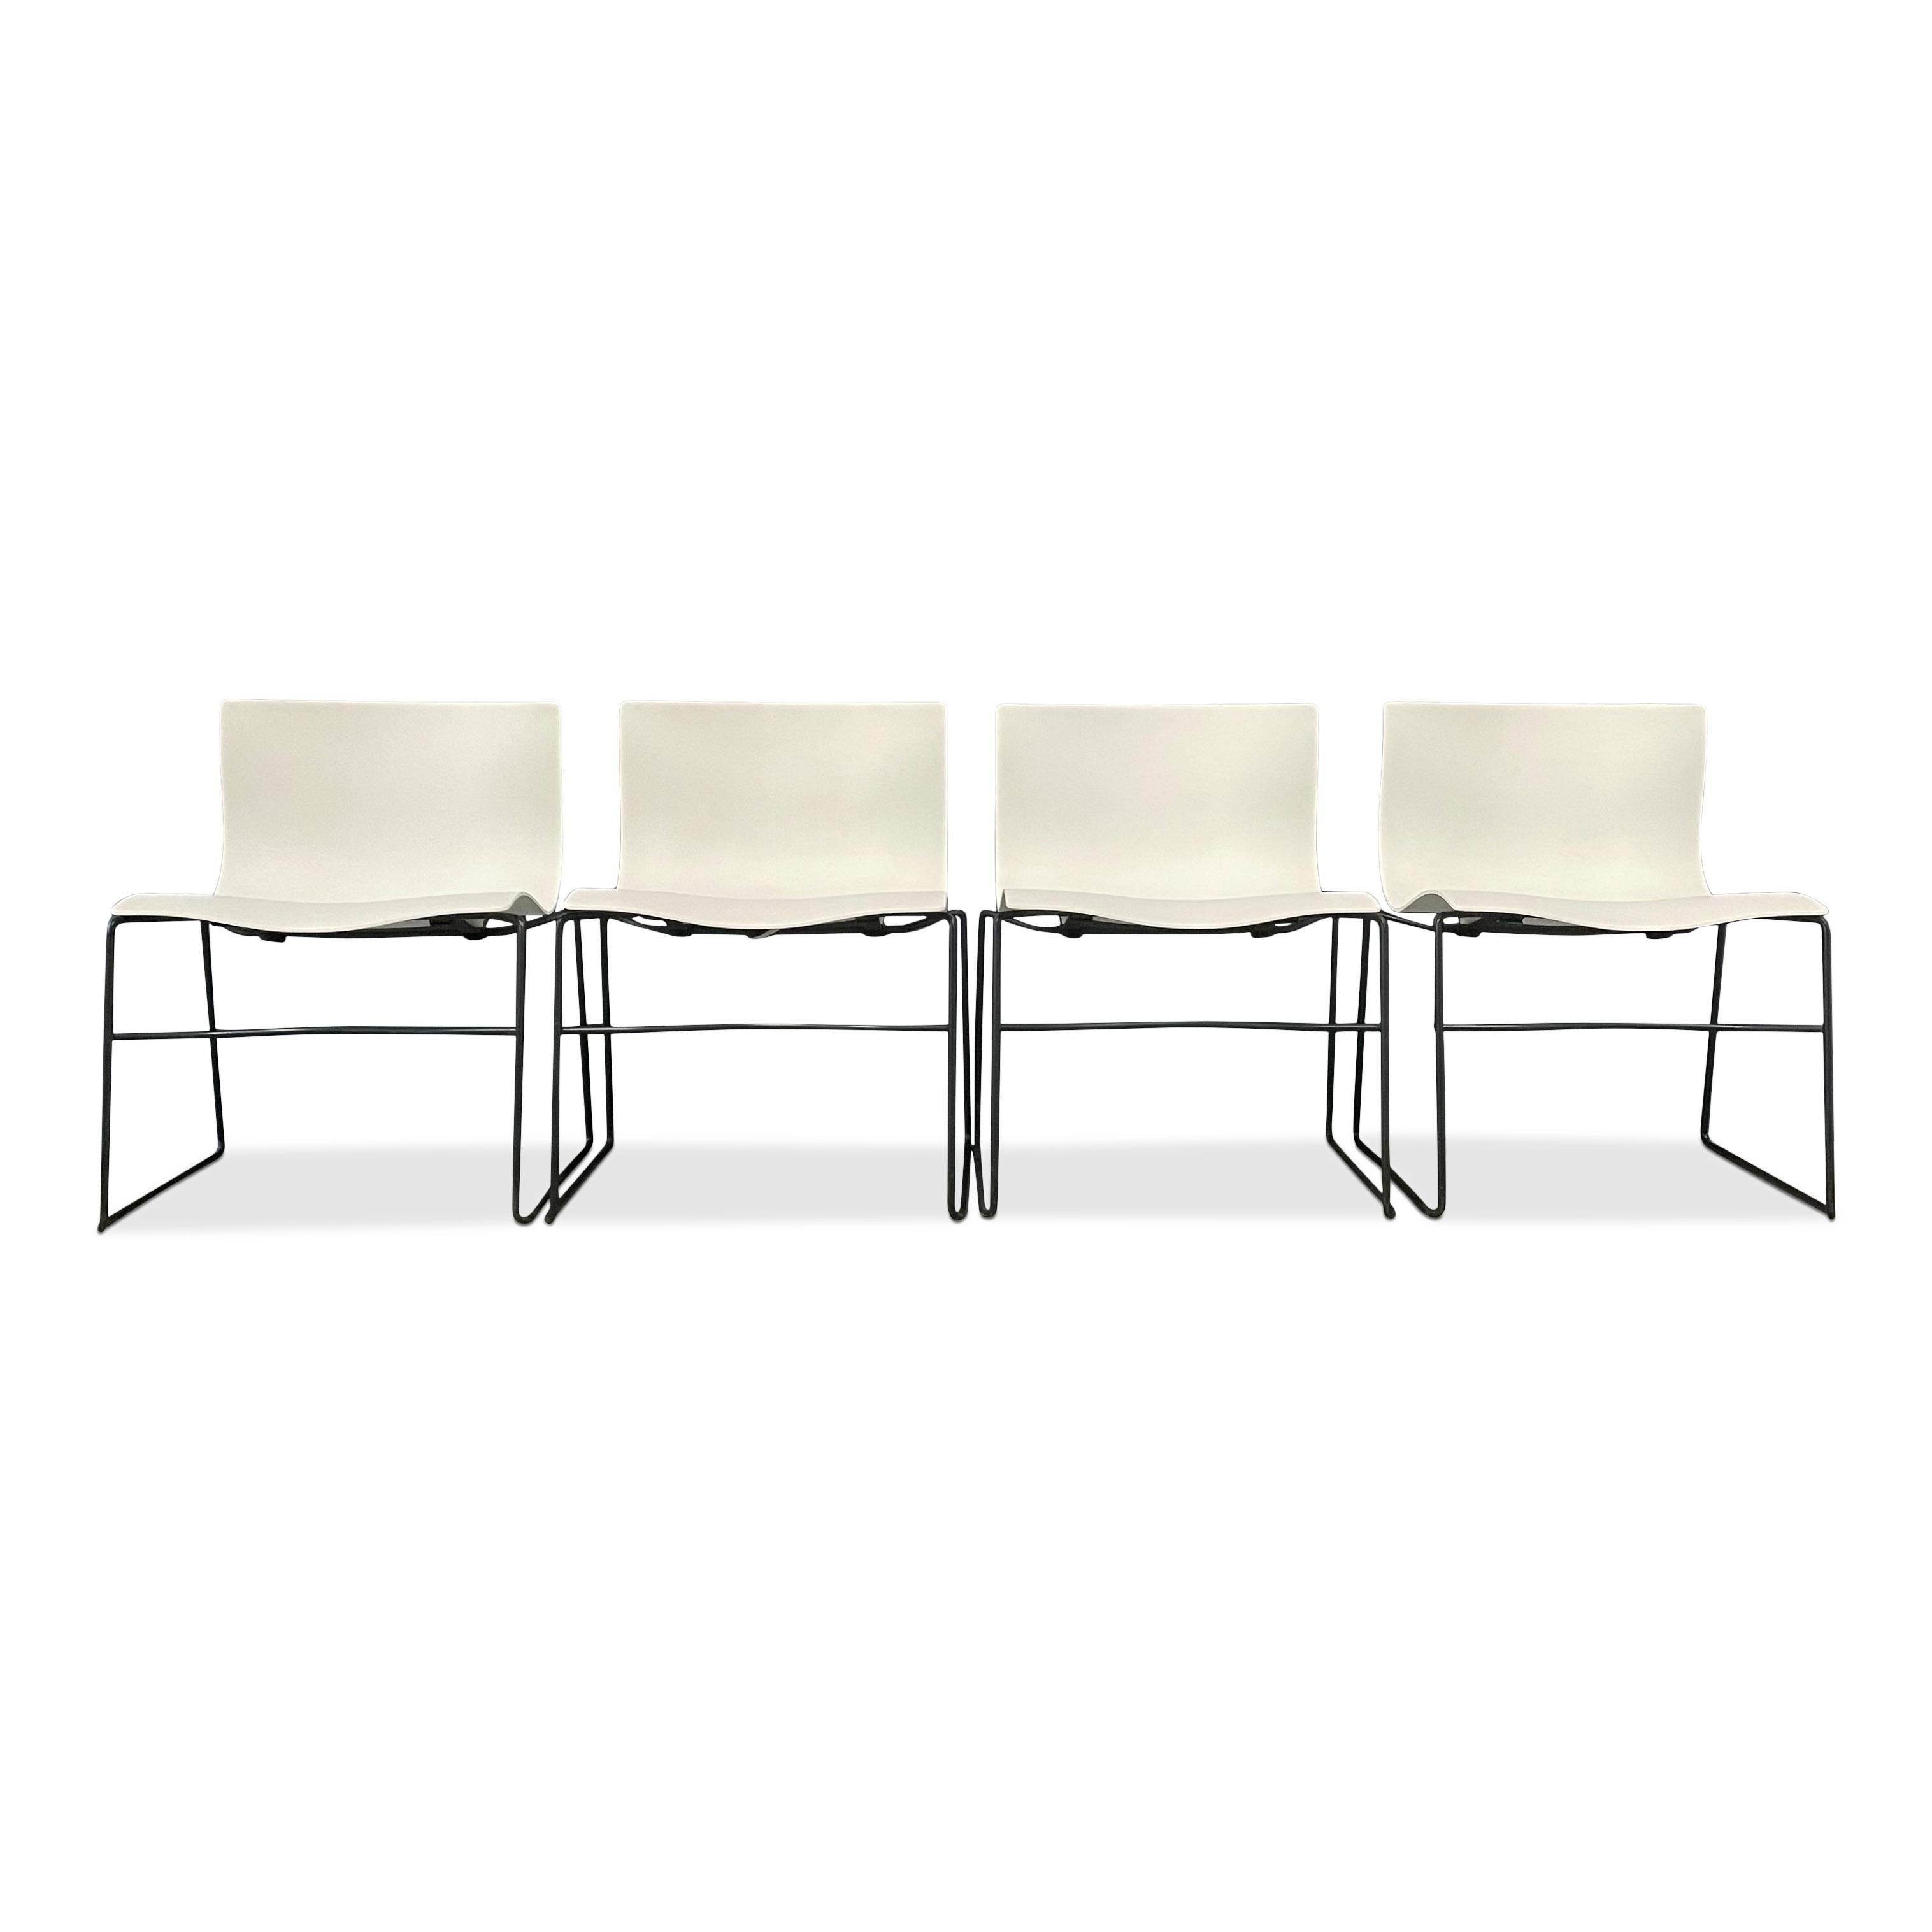 Design iconique de Massimo Vignelli pour Knoll. Ces chaises éthérées, qui semblent flotter dans l'air, sont entièrement étiquetées avec un motif Knoll, Vignelli en relief et une étiquette Knoll en papier.

Cette annonce est pour une paire de